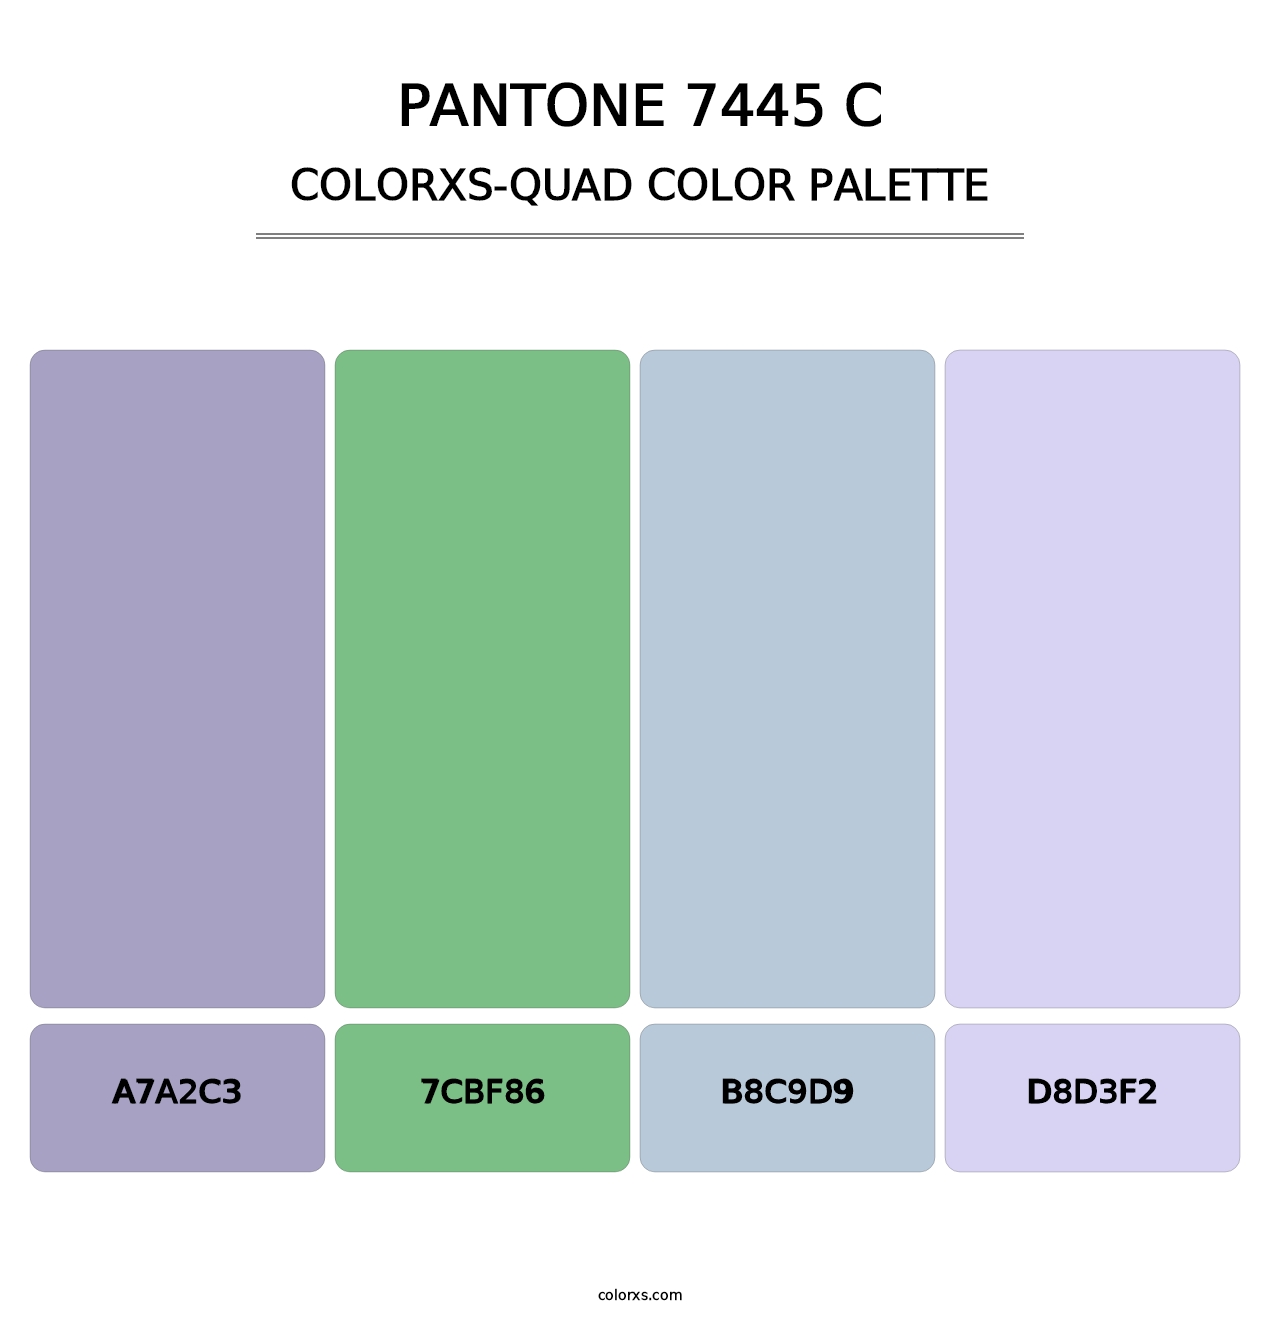 PANTONE 7445 C - Colorxs Quad Palette